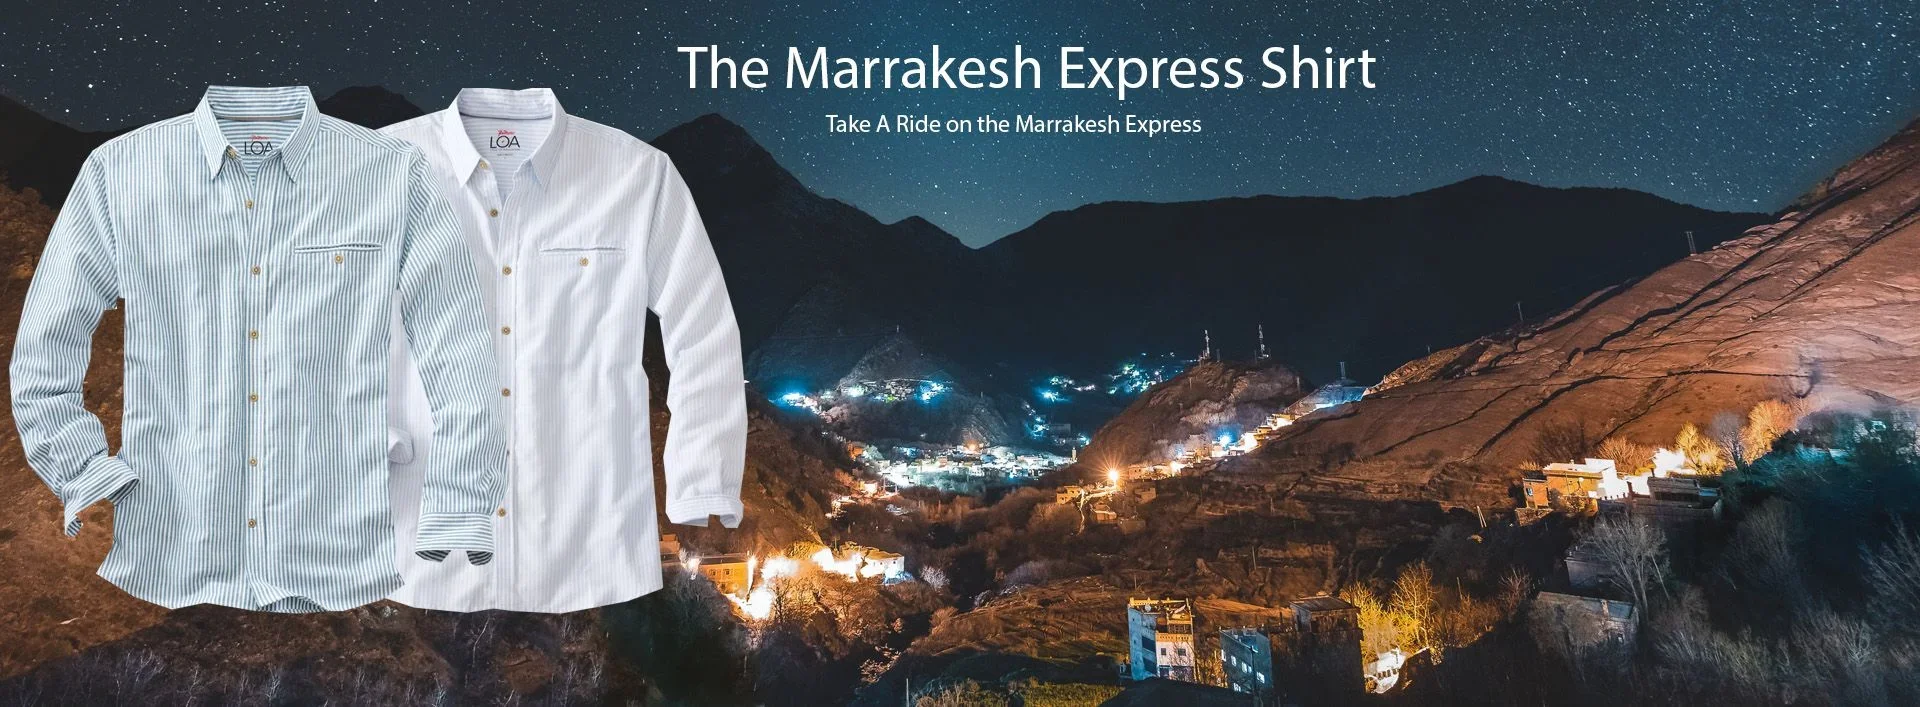 marakesh shirts